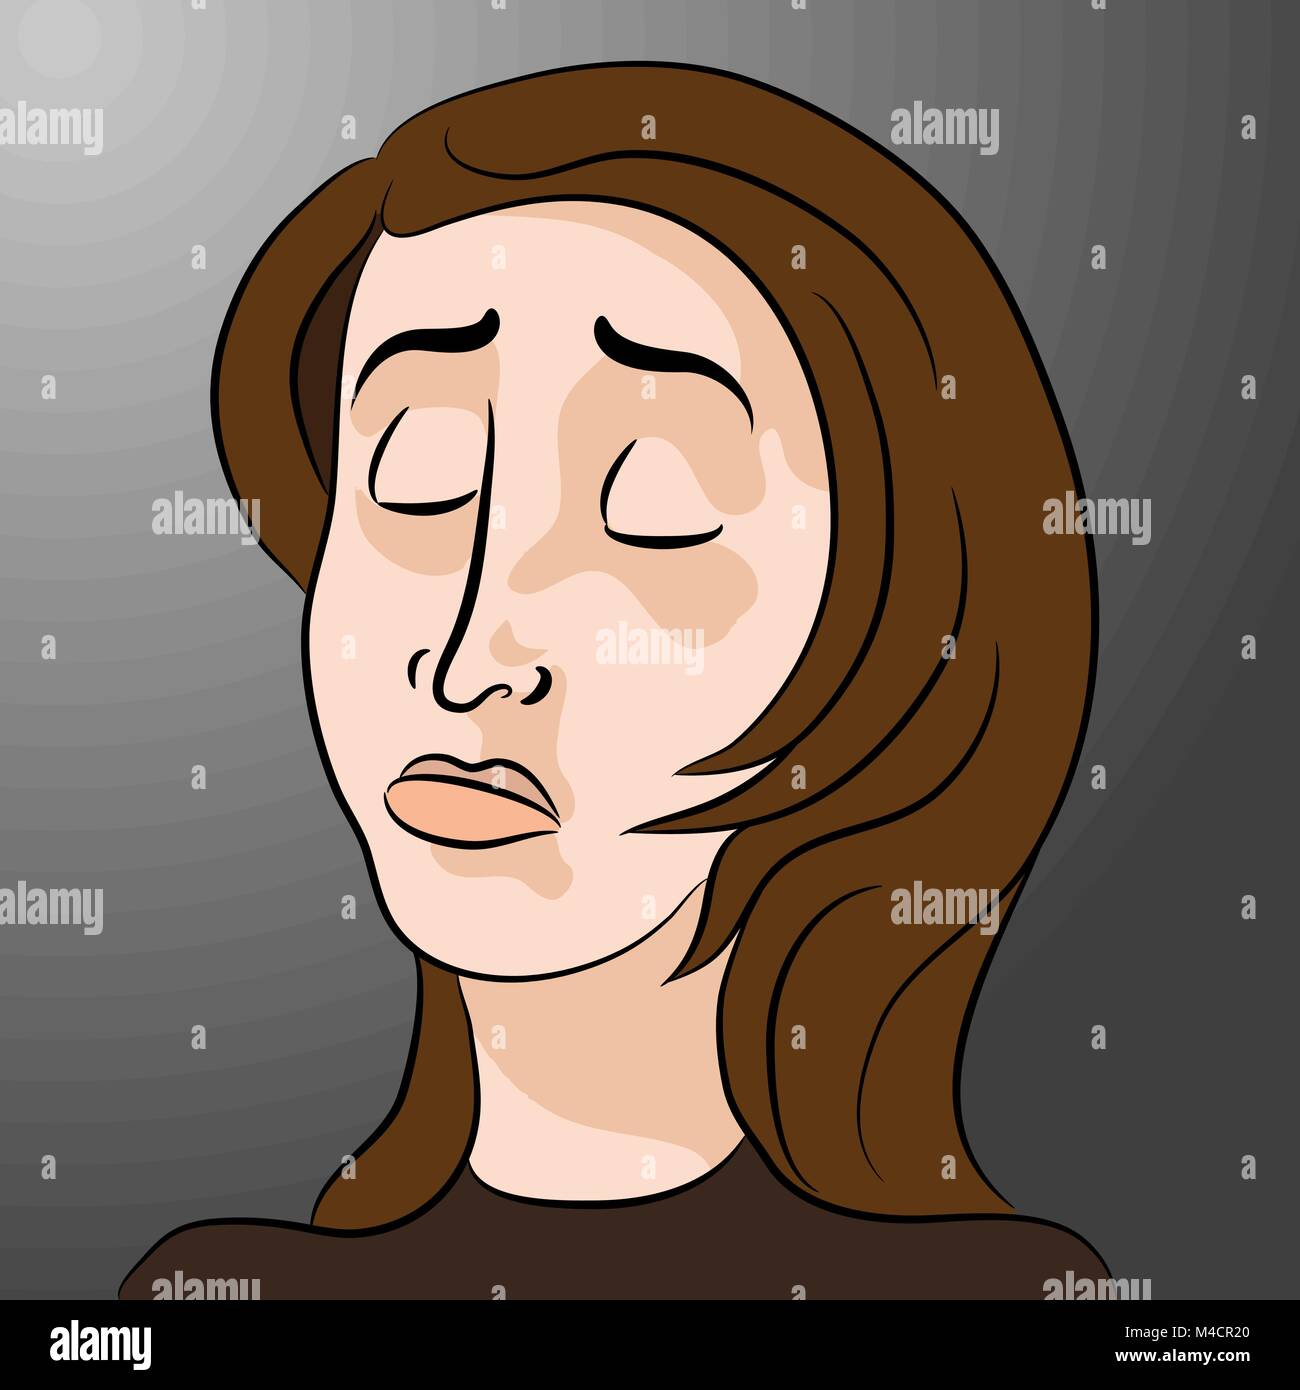 An image of a cartoon sad woman. Stock Vector